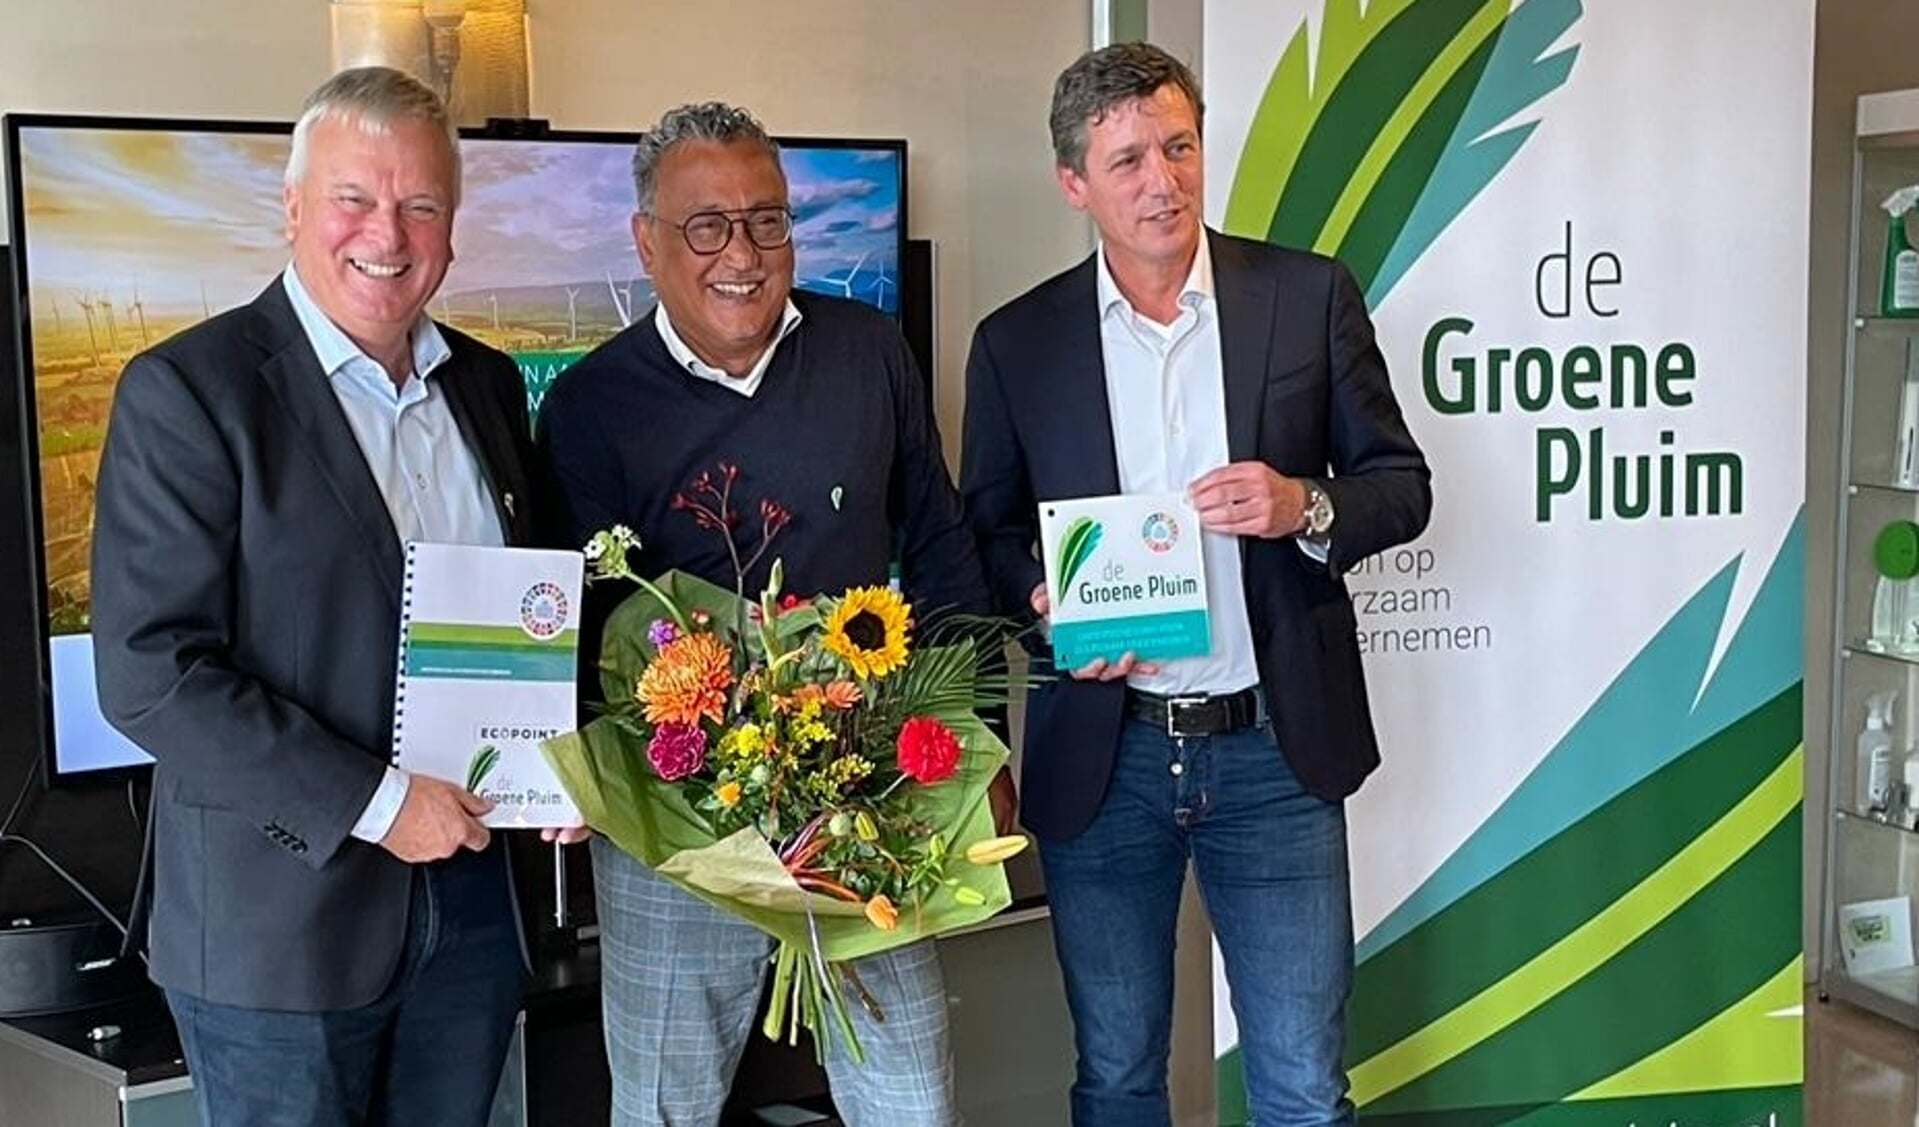 Peter van den Eijnden (voorzitter De Groene Pluim, Ferry Samuels (directeur Eco-point) en Jacco Vonhof (voorzitter MKB)